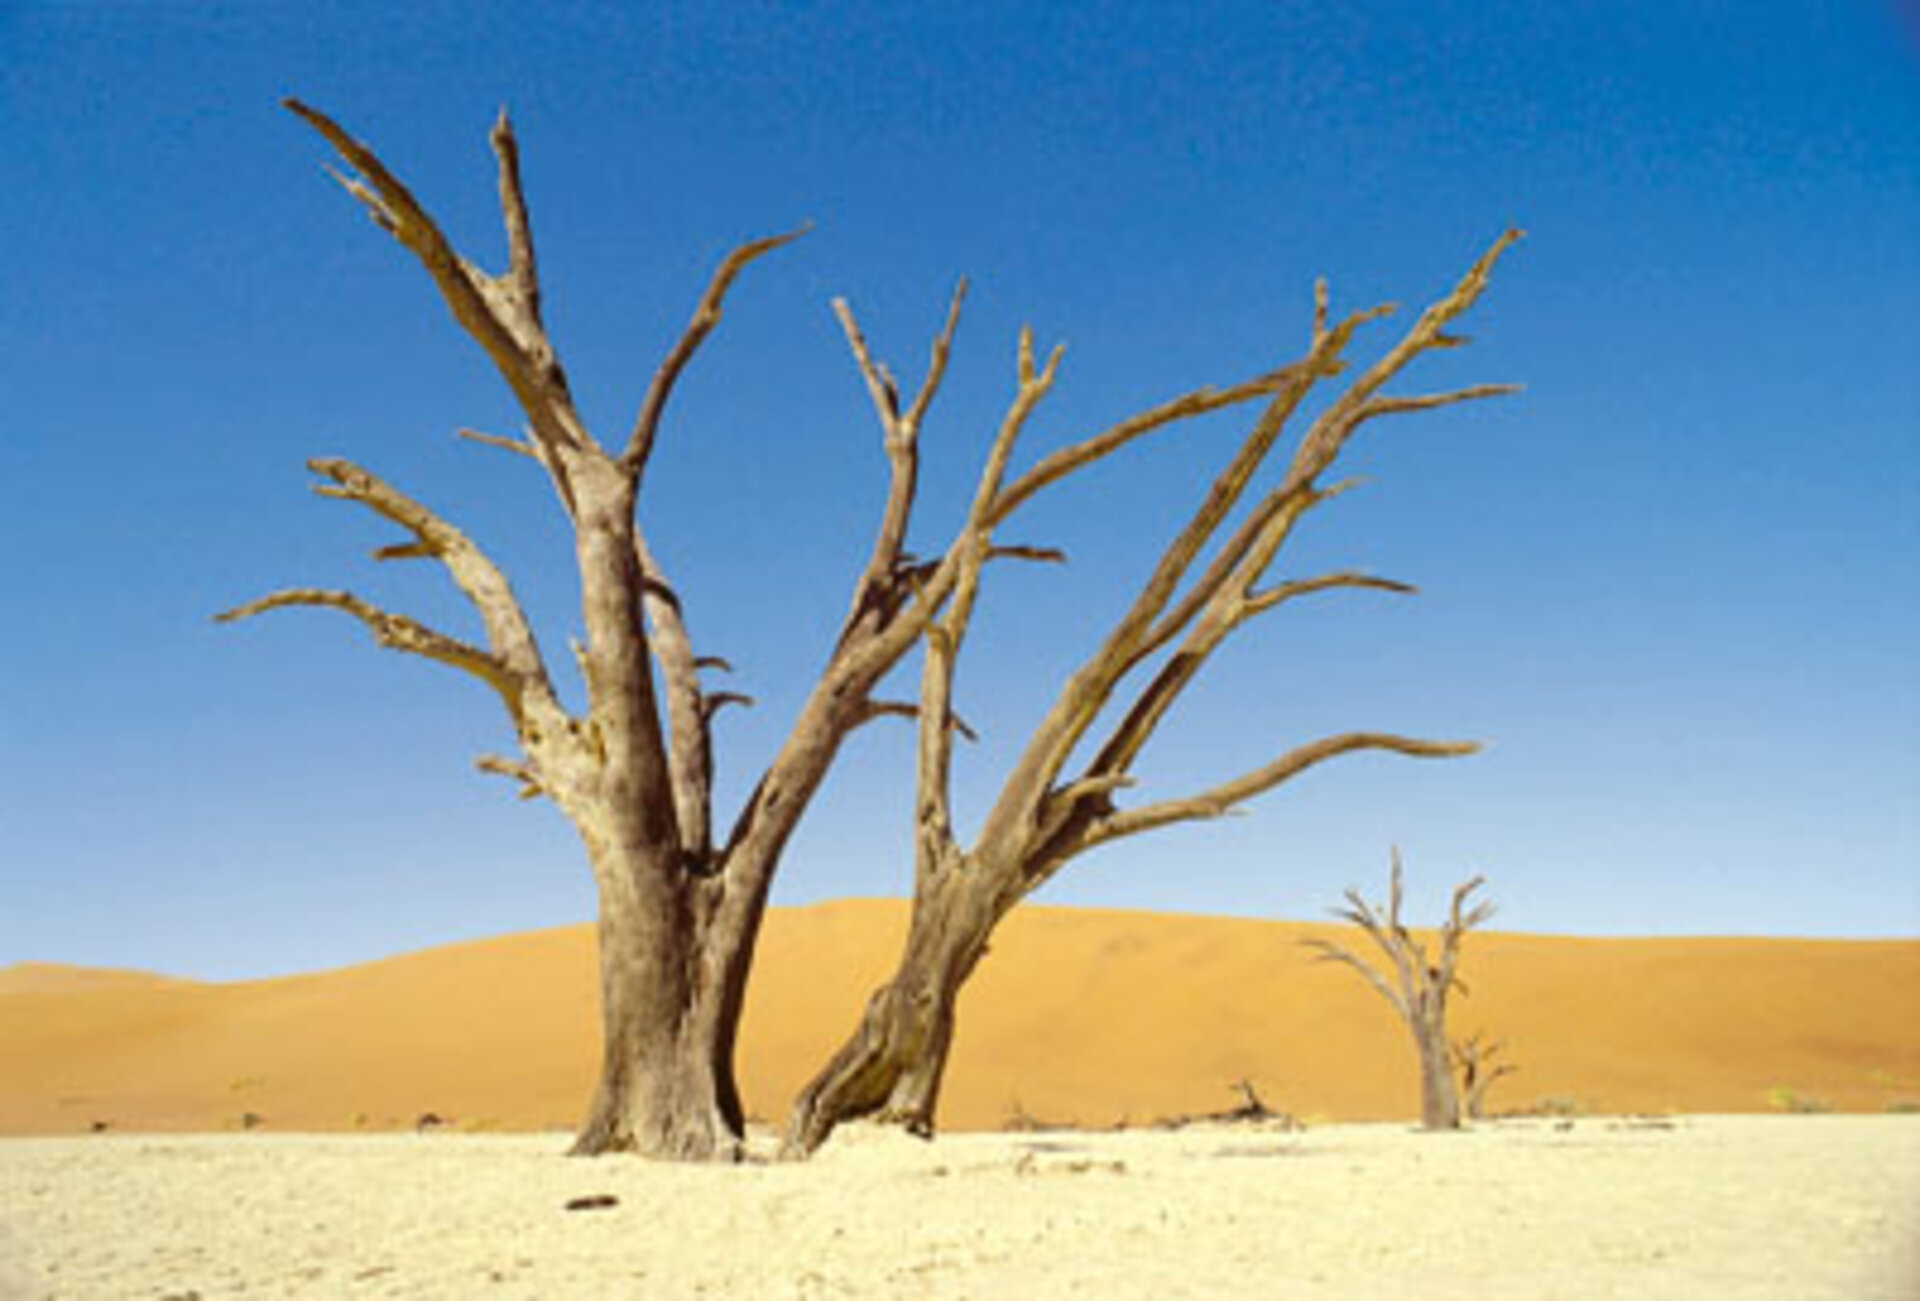 La desertificazione è uno dei maggior problemi ambientali a livello globale